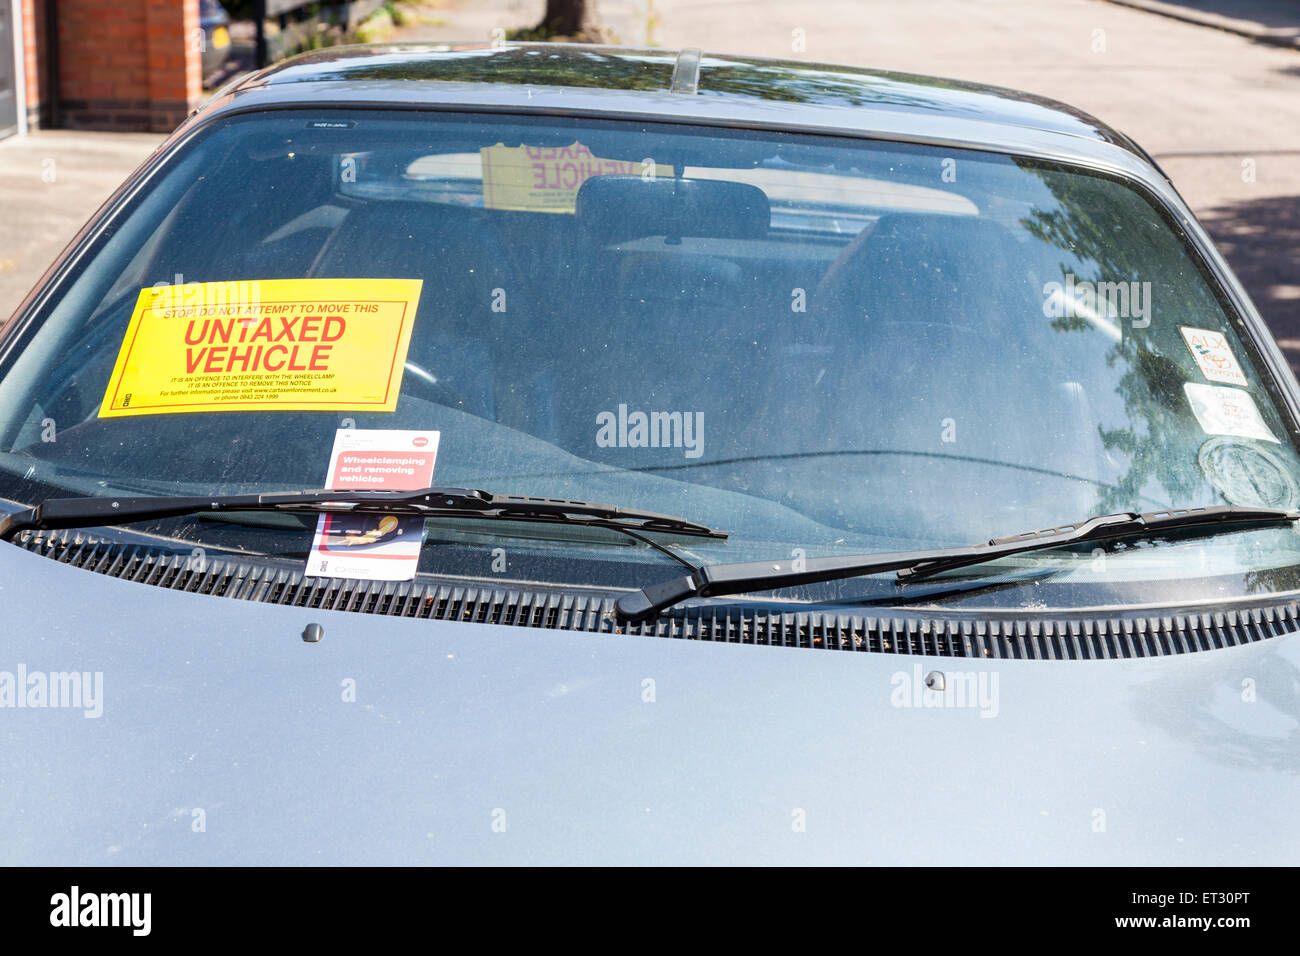 Véhicule non taxés. Avis sur un pare-brise de voiture une voiture avec pas d'impôt à payer. Nottinghamshire, Angleterre, RU Banque D'Images